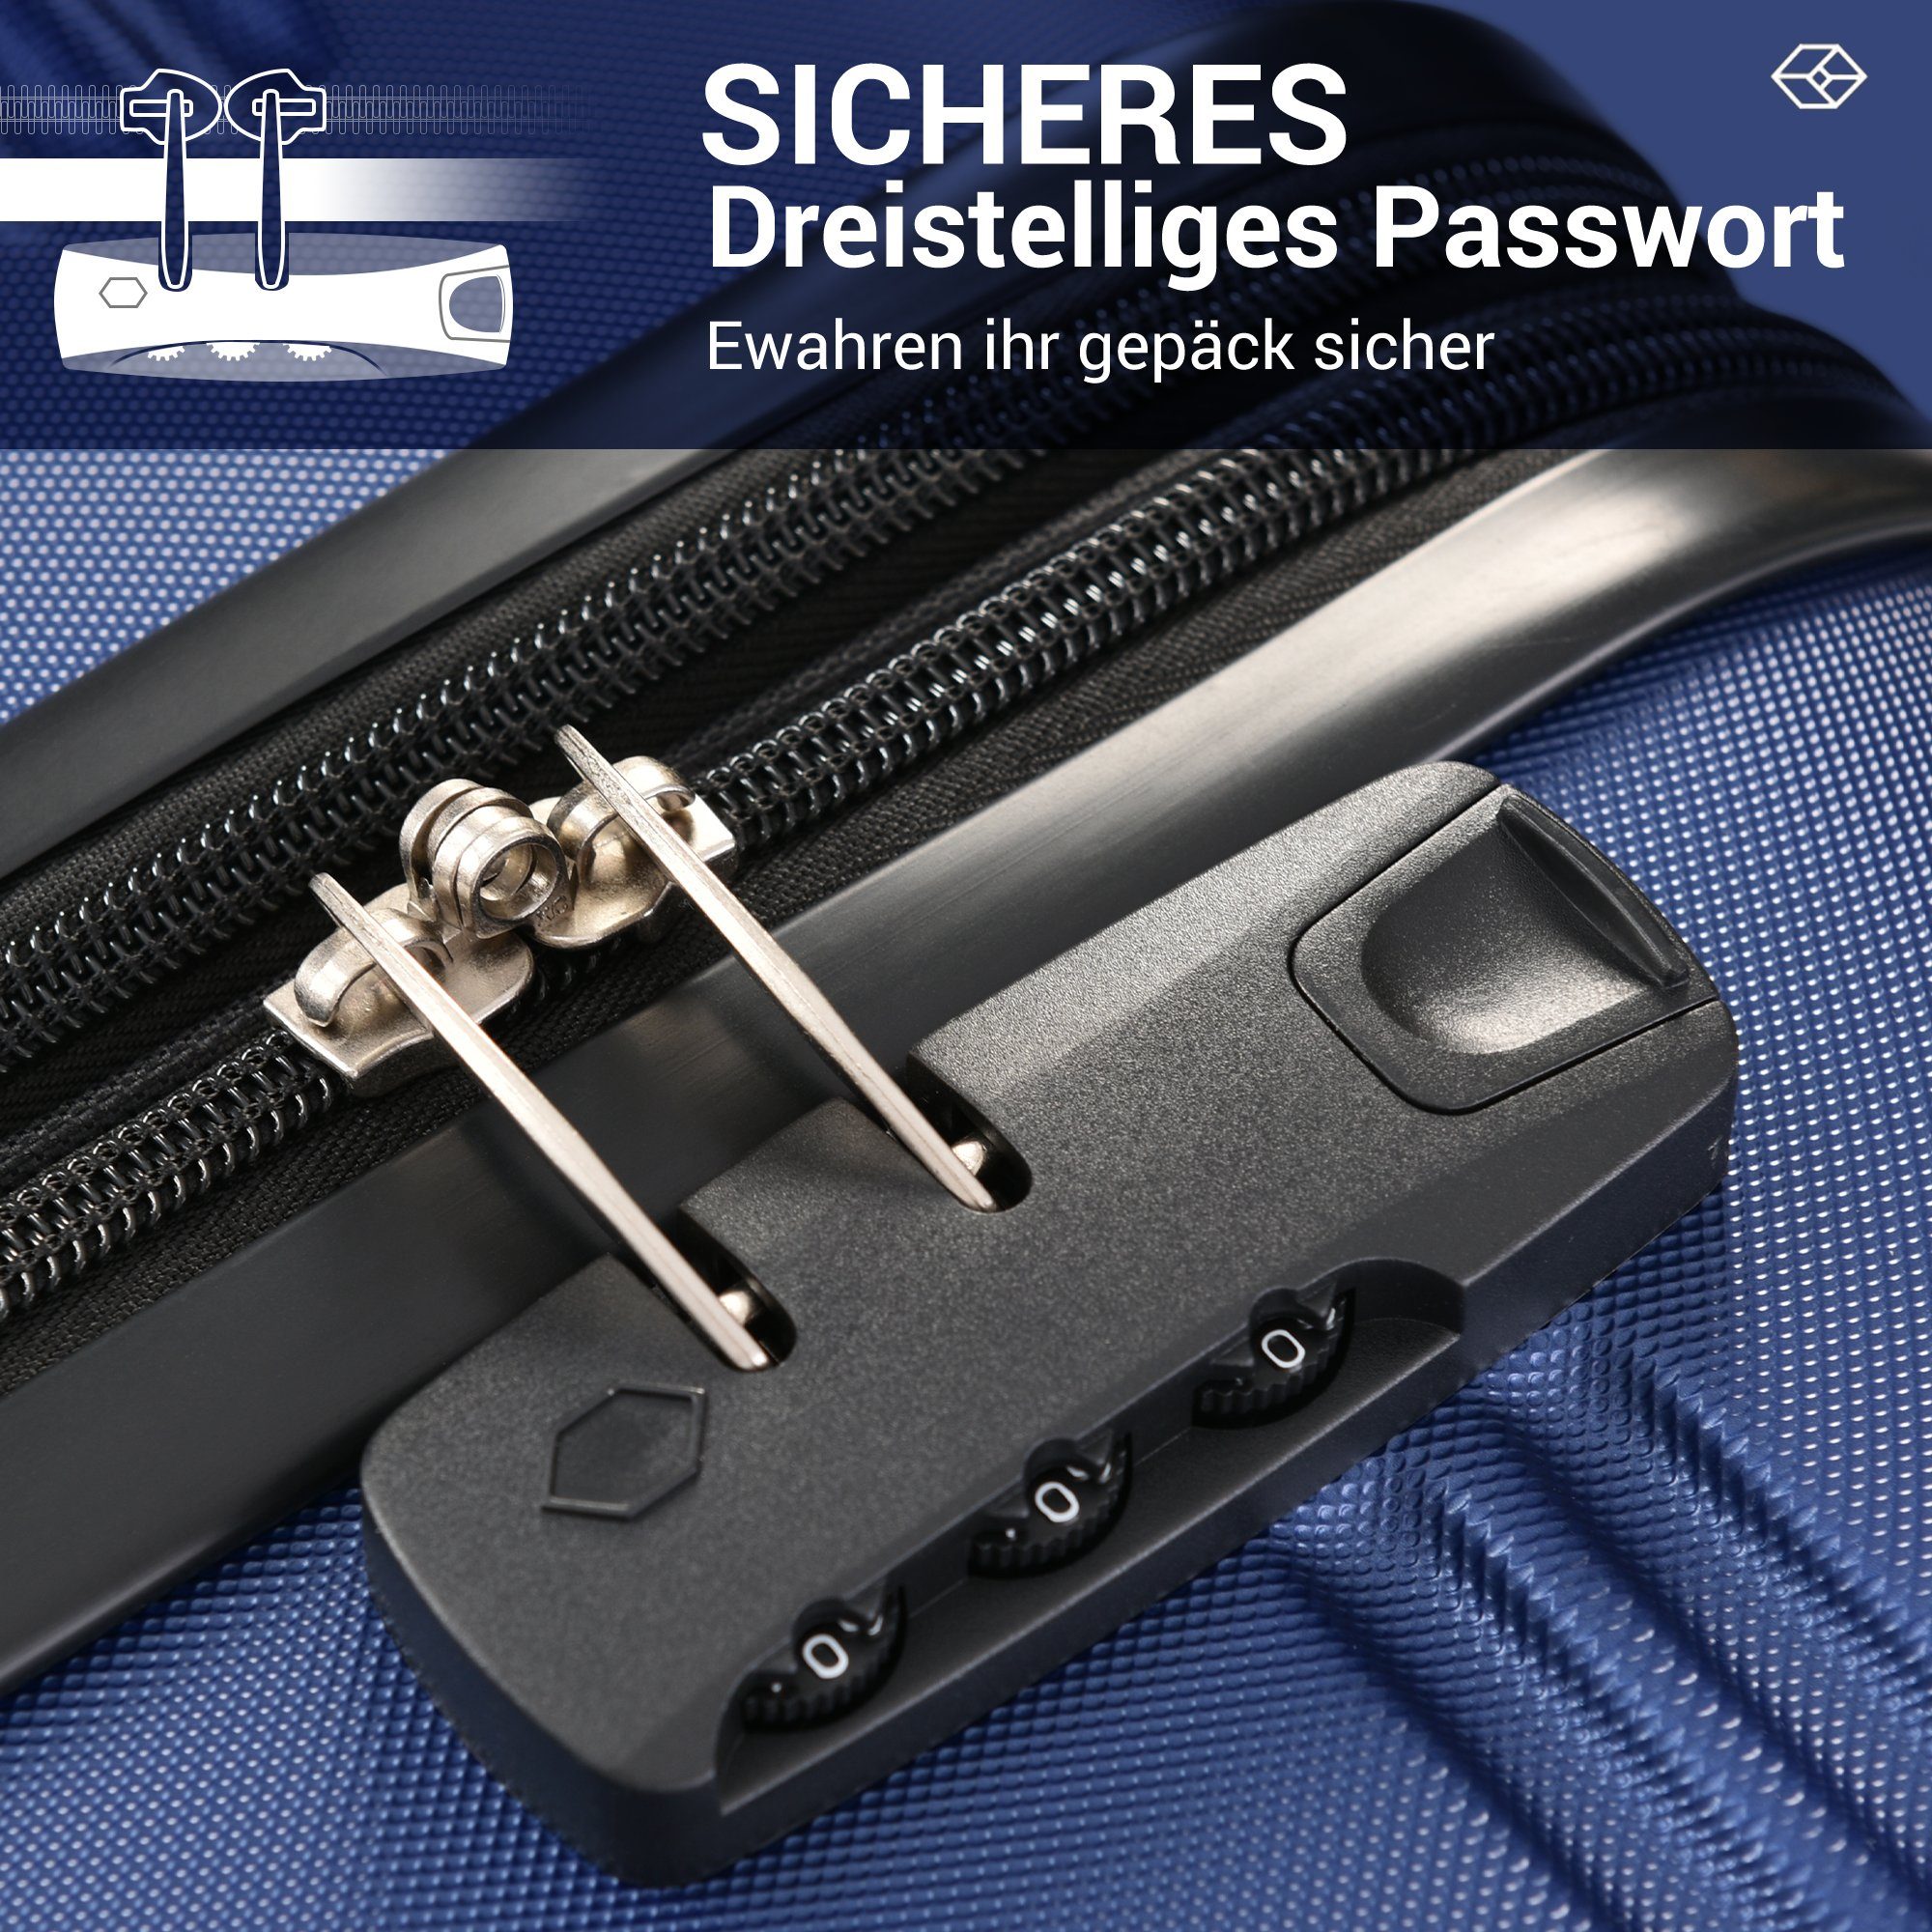 Ulife Trolleyset Rollkoffer Reisekoffer Geschäftsreisekoffer mit 4 TSA-Schloss, tlg) Blau Rollen, (3